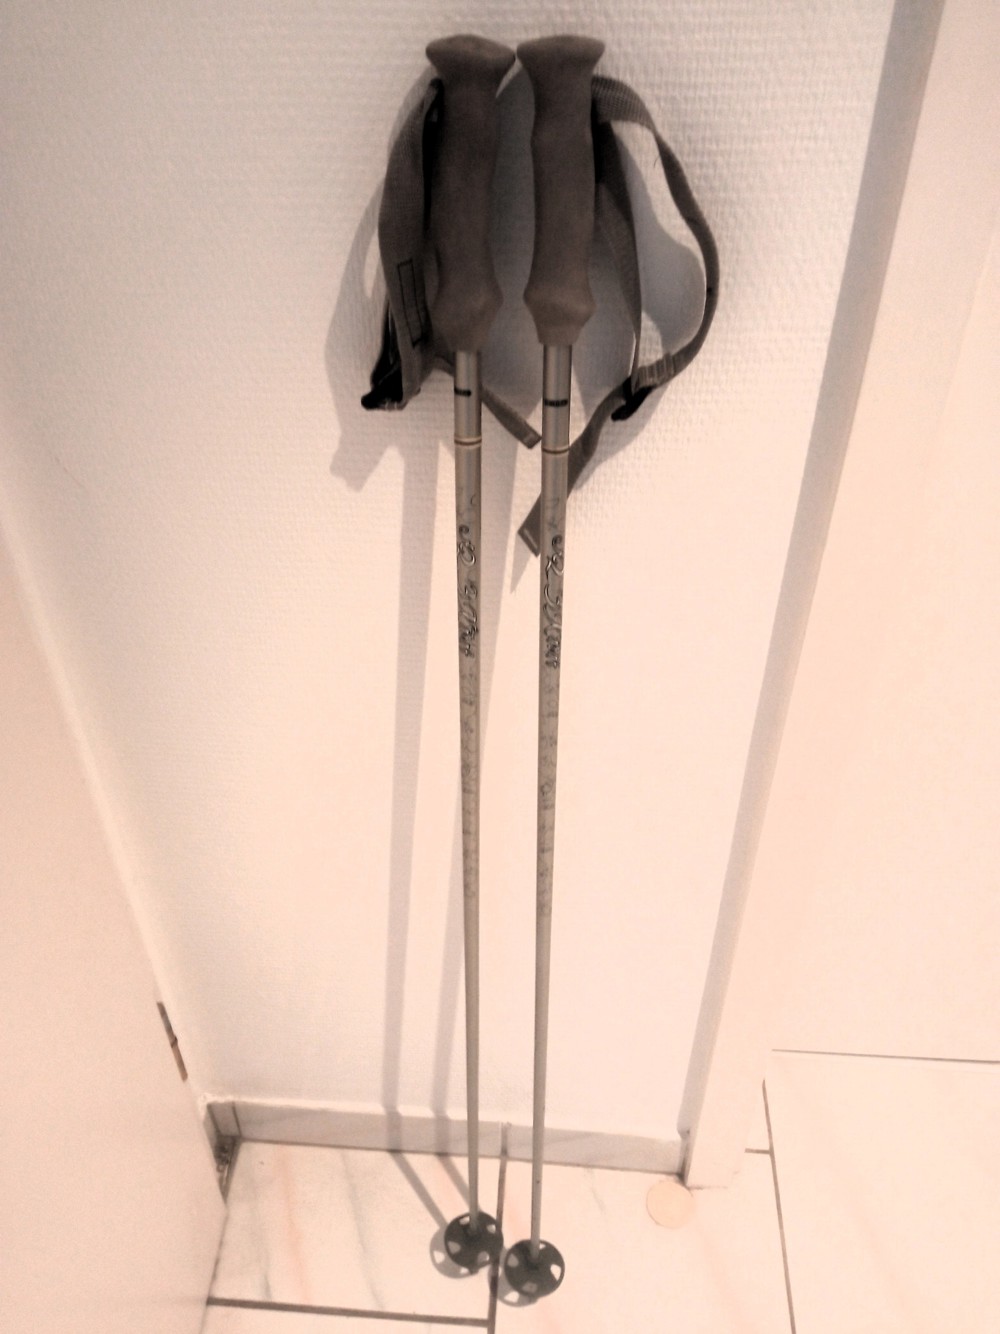 Skistöcke "K2" 110 cm, guter Zustand